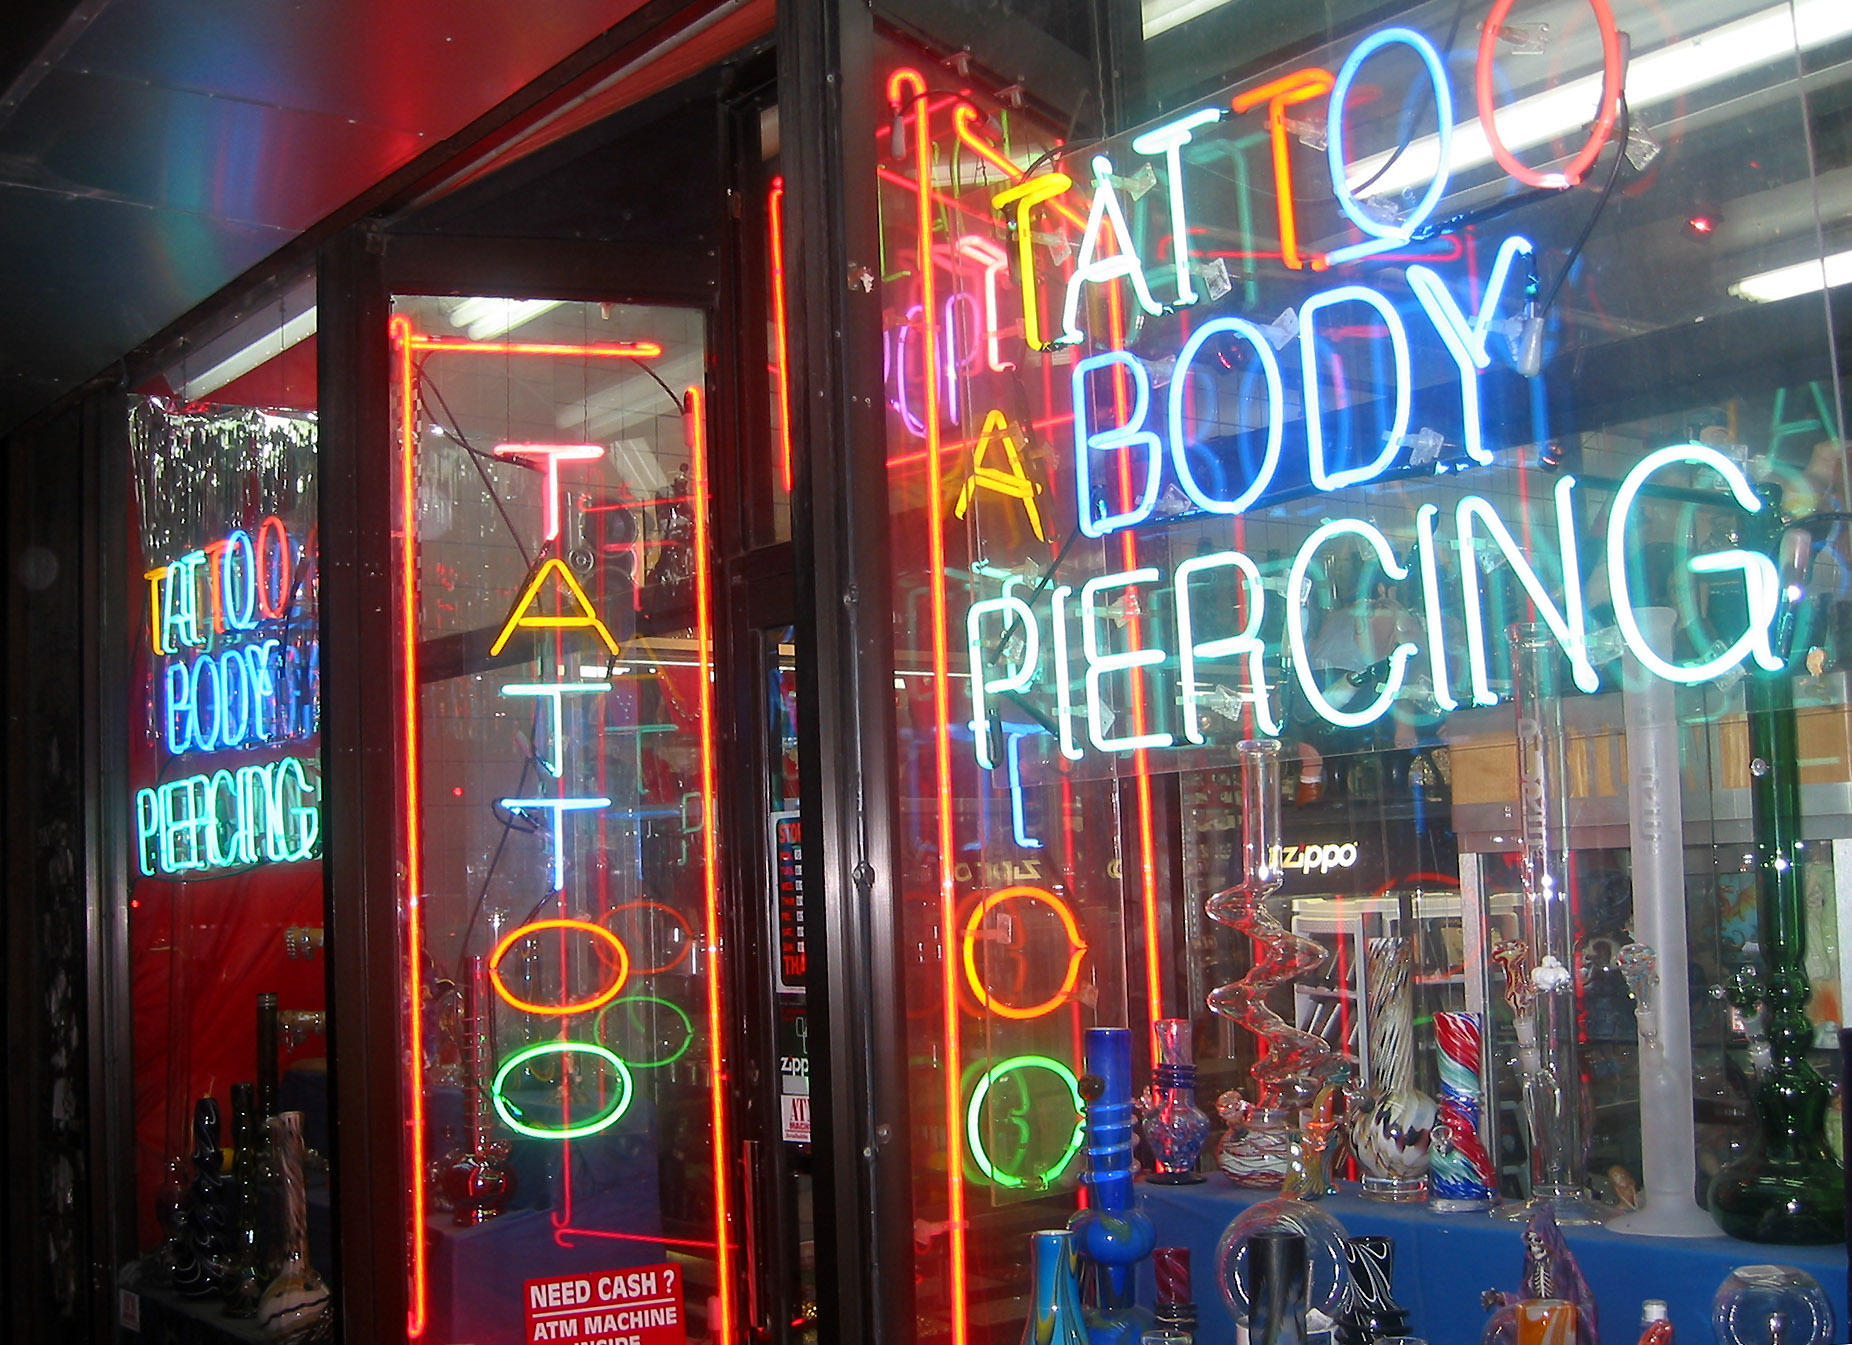 Tatto, Body Piercing & Porn Shop